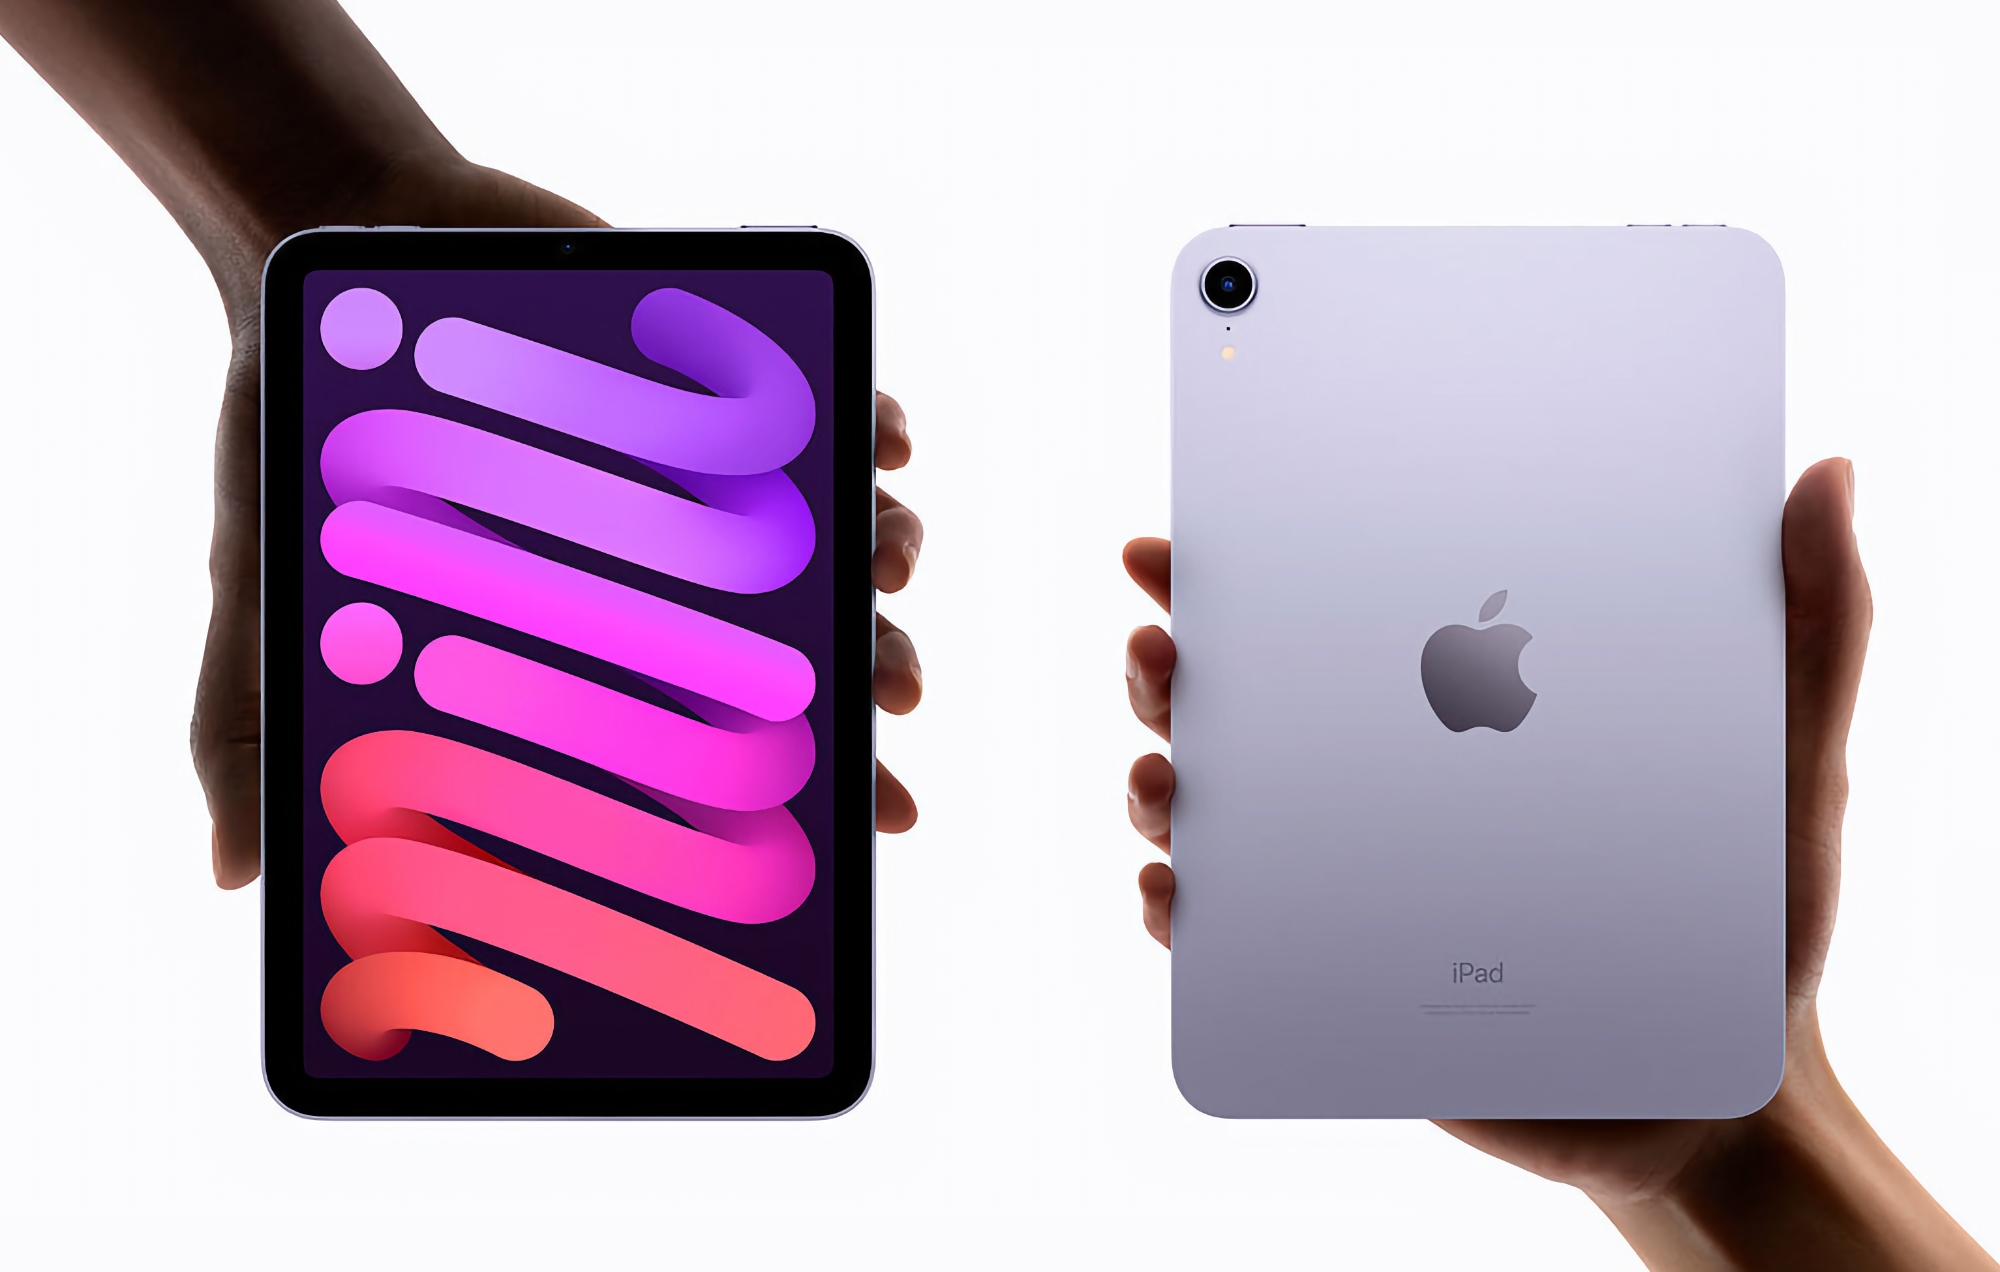 Offerta del giorno: iPad Mini 6 su Amazon con uno sconto fino a 109 dollari